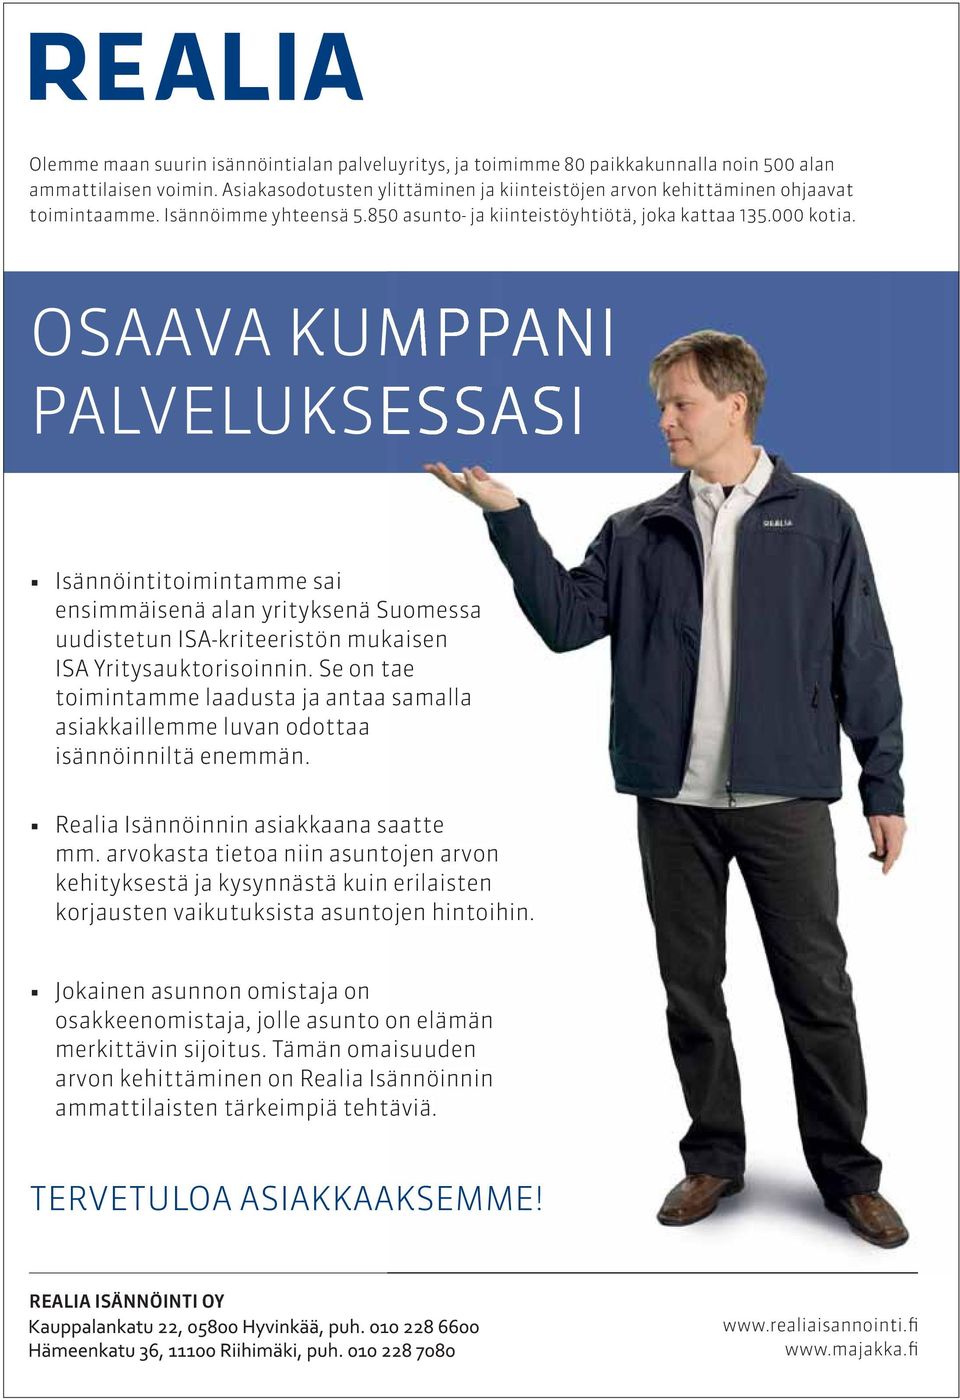 OSAAVA KUMPPANI PALVELUKSESSASI Isännöintitoimintamme sai ensimmäisenä alan yrityksenä Suomessa uudistetun ISA-kriteeristön mukaisen ISA Yritysauktorisoinnin.